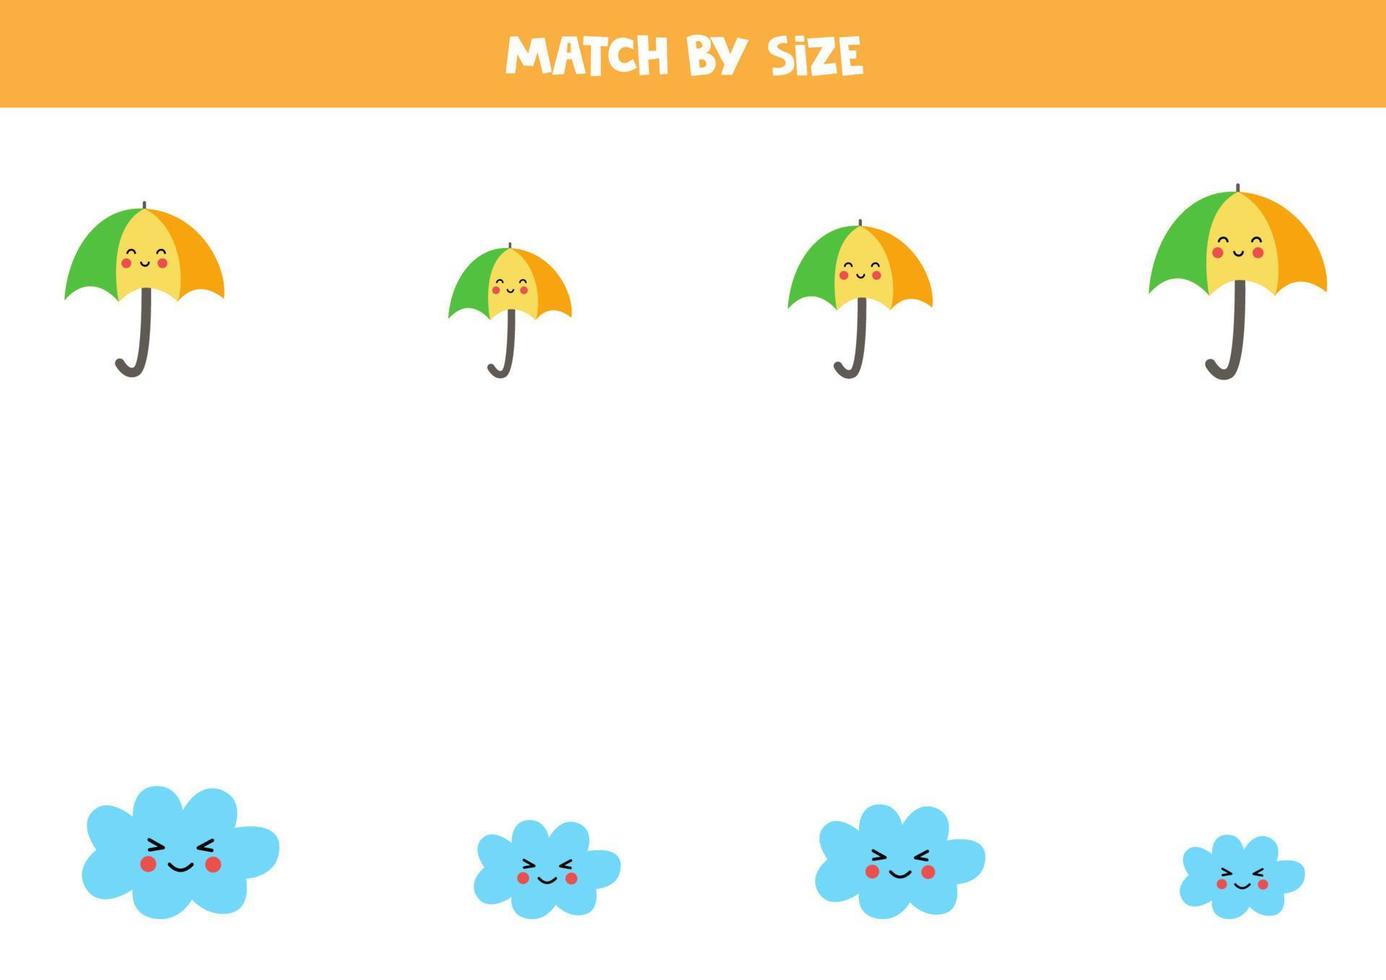 matchande spel för förskolebarn. matcha moln och paraplyer efter storlek. vektor